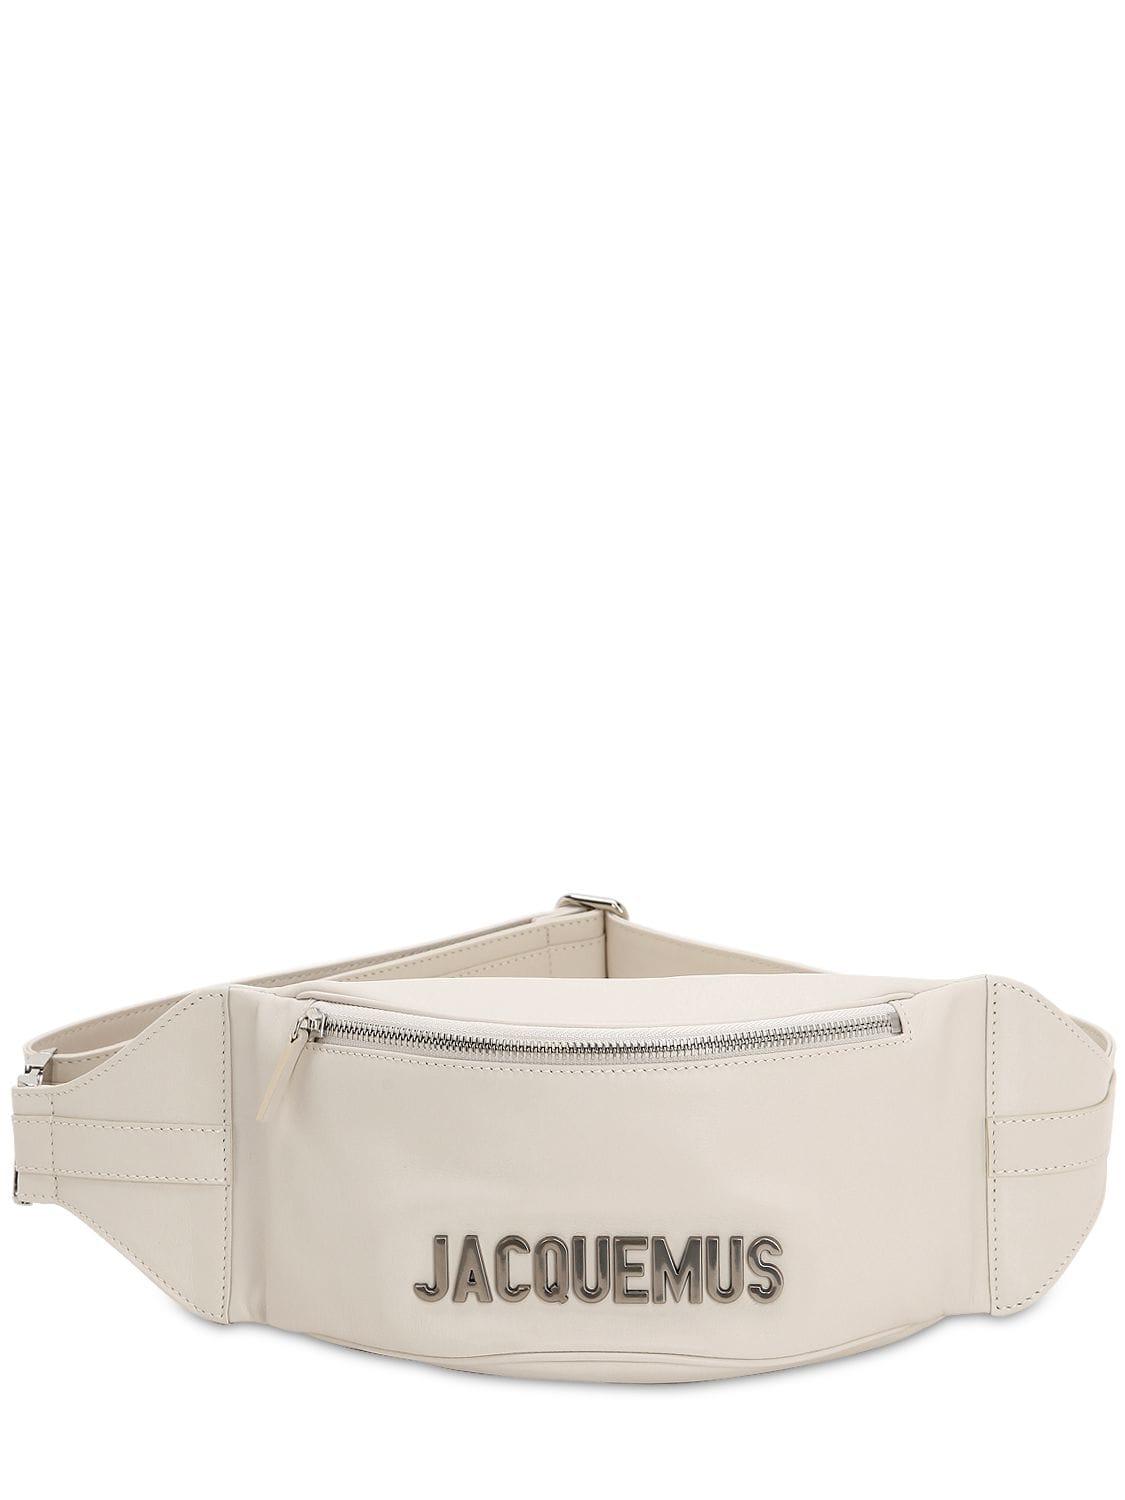 Jacquemus La Banane Leather Belt Bag in Natural for Men | Lyst